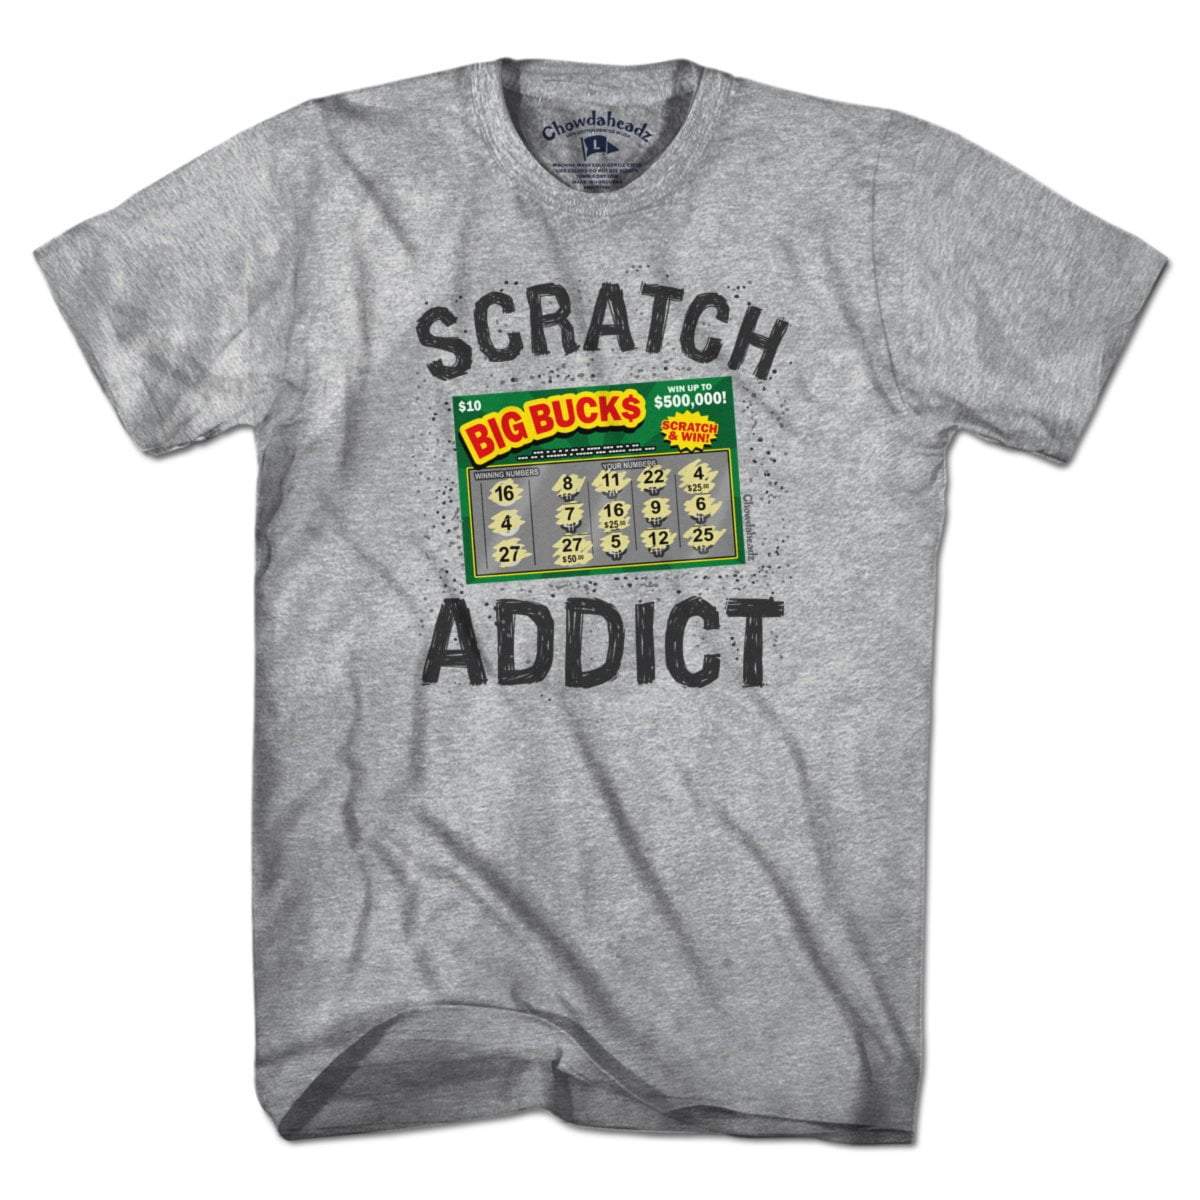 Scratch Addict T-Shirt - Chowdaheadz